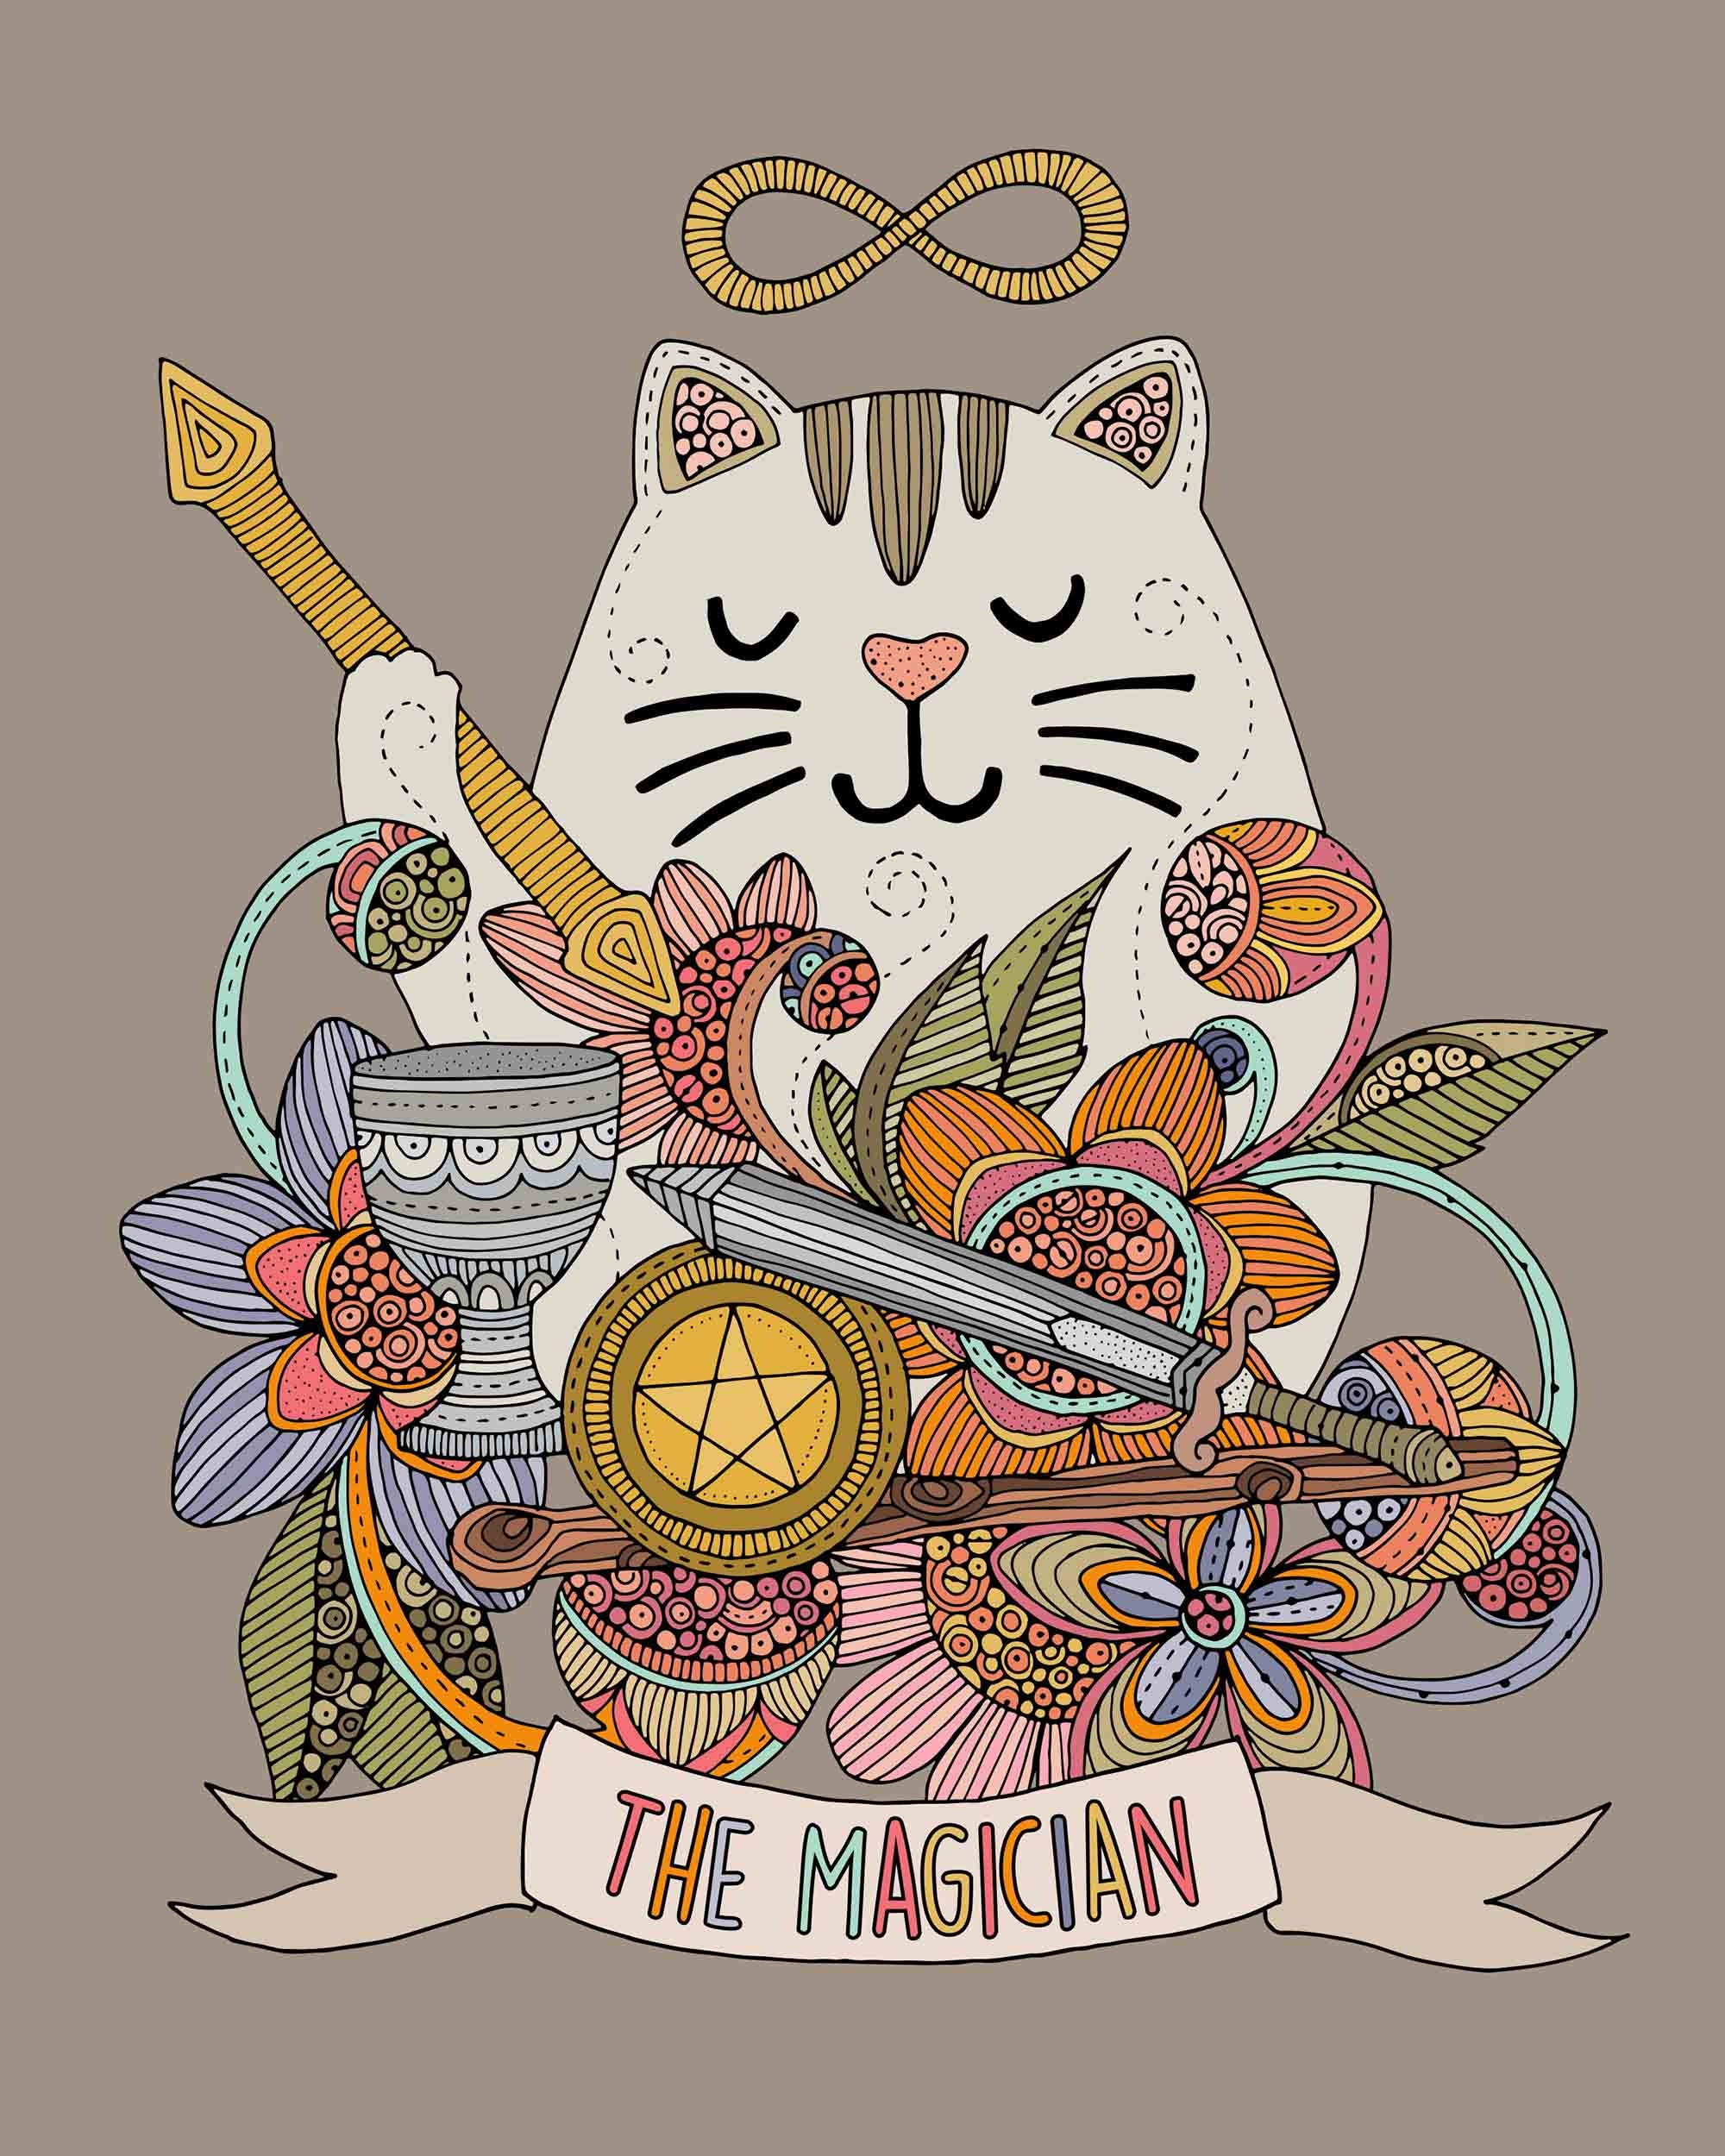 The Cat Magician Tarot El Mago the Magician Whimiscal Cat 